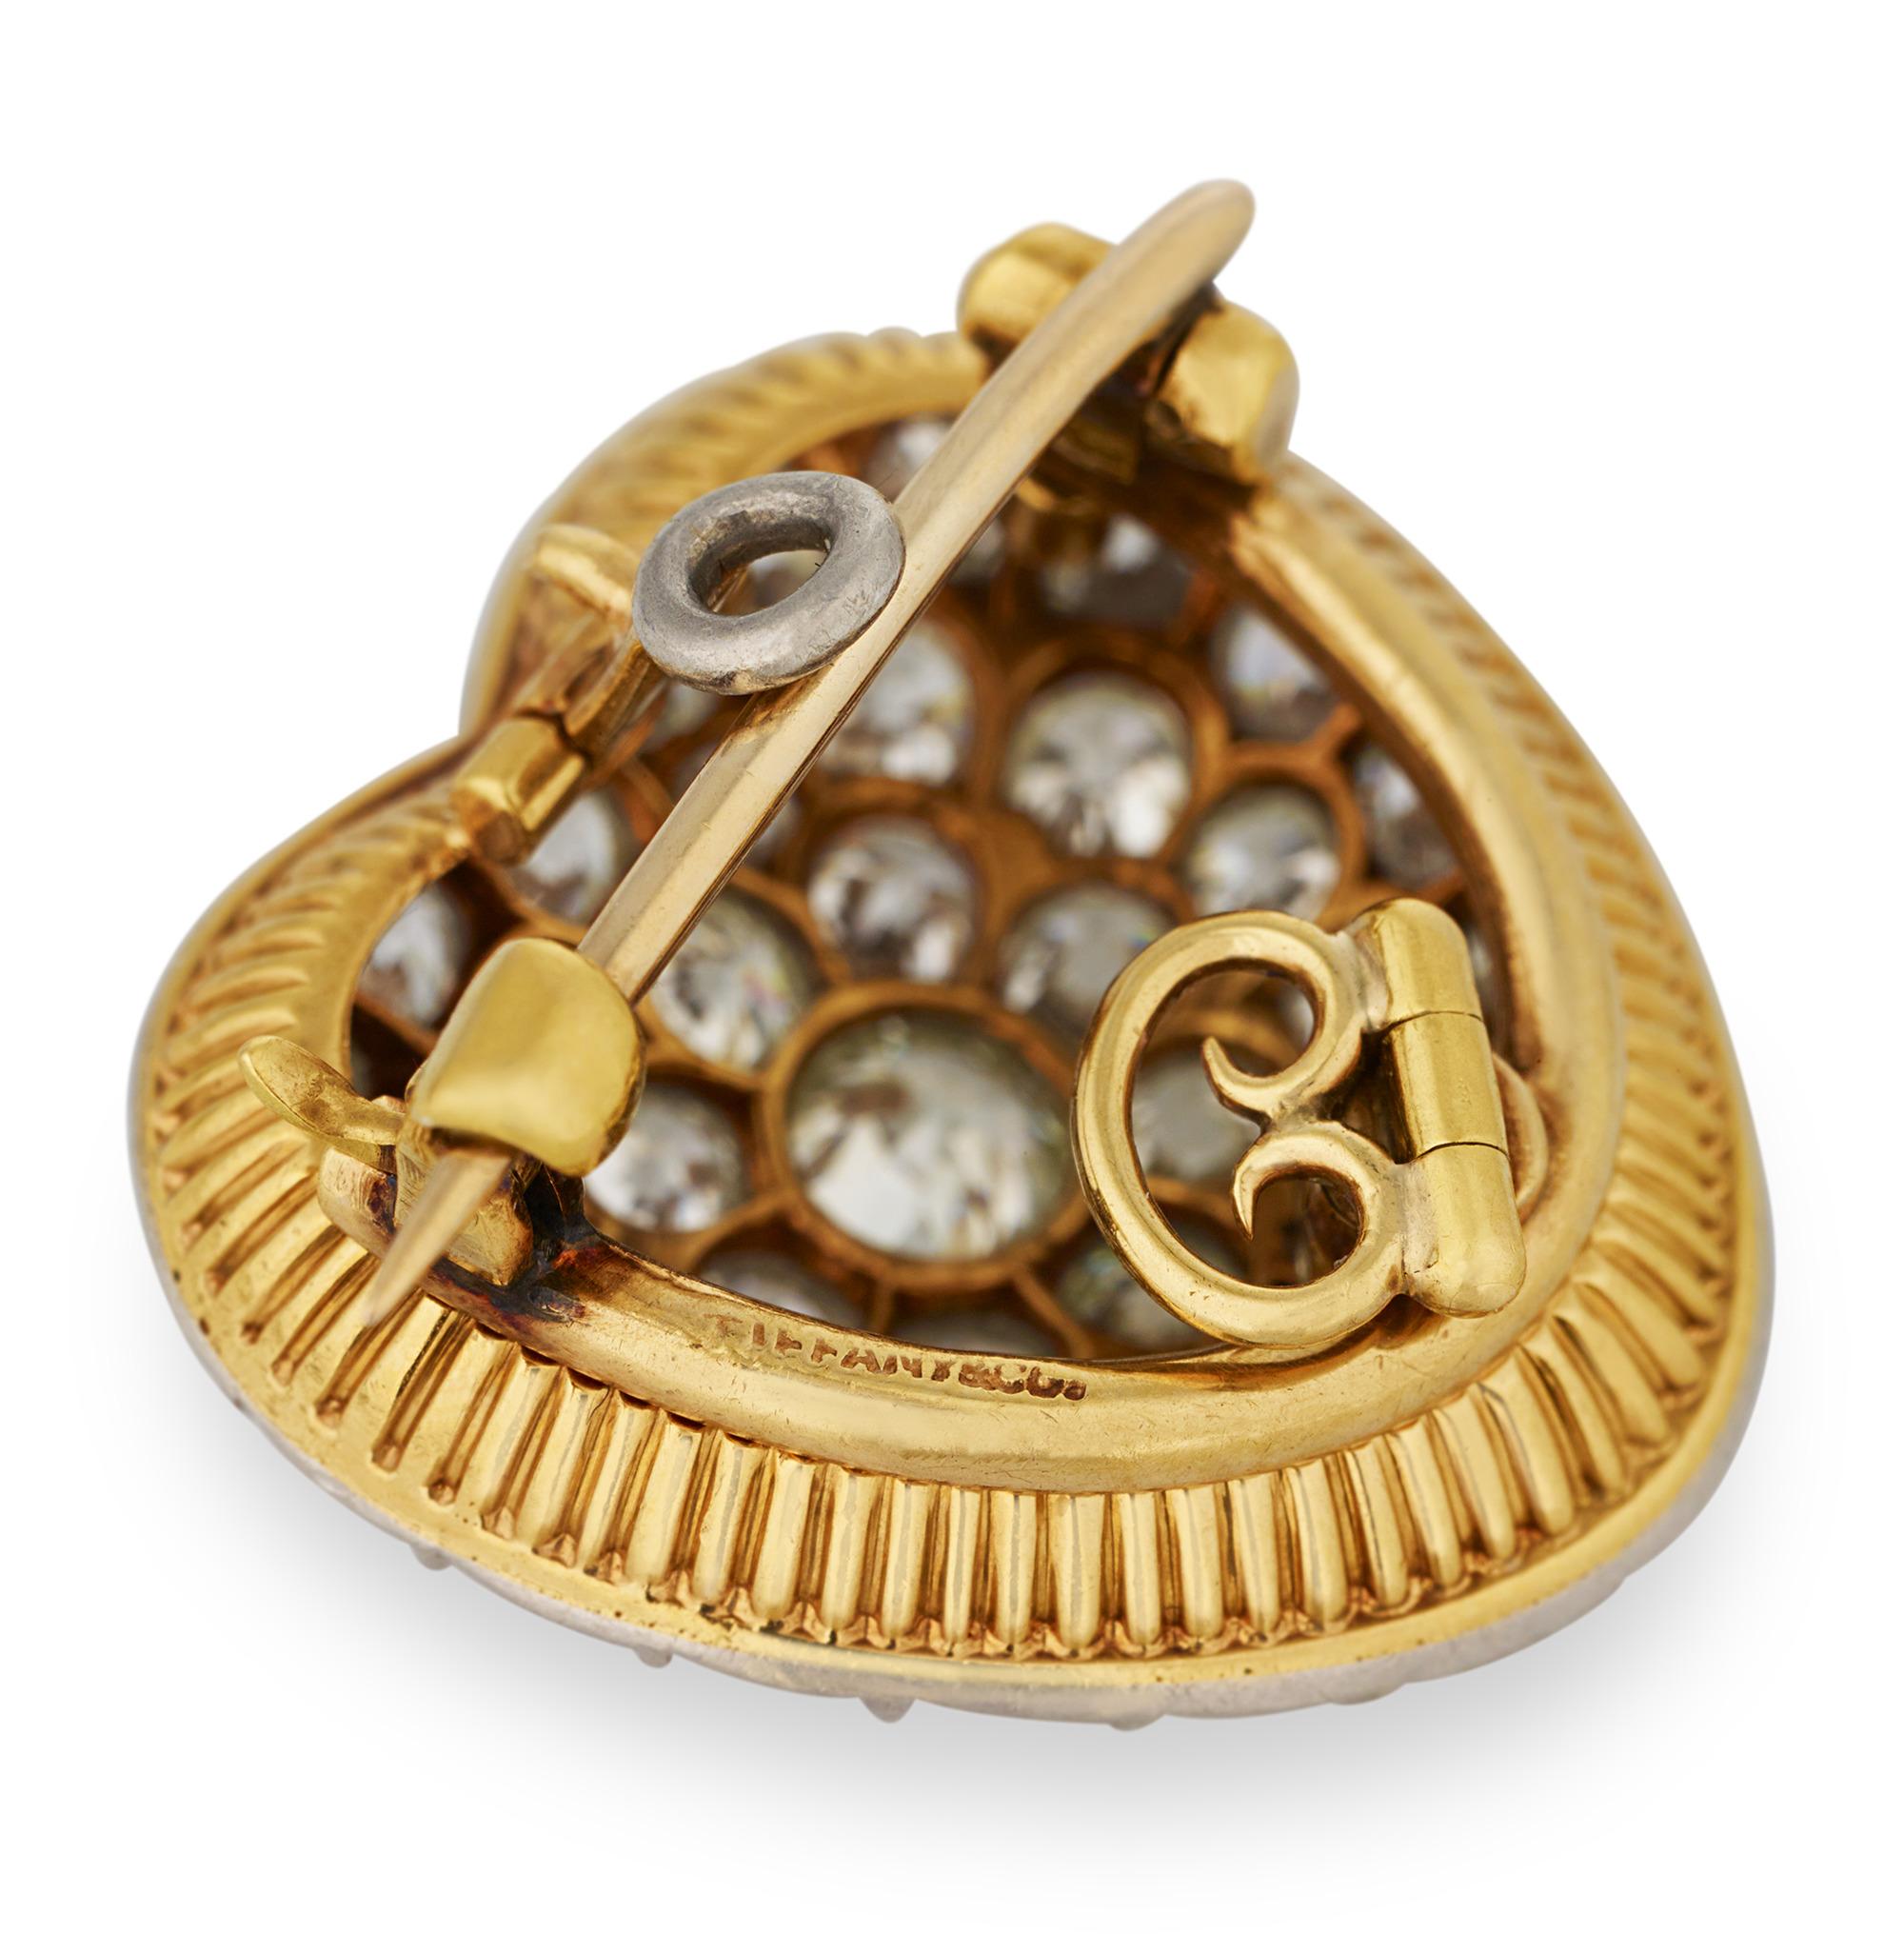 Dieser charmante herzförmige Anhänger von Tiffany & Co. stammt aus der Edwardianischen Zeit. Ungefähr 4,00 Karat Diamanten im alten europäischen Schliff verleihen der Kreation einen beeindruckenden Glanz. Der aus 18 Karat Gold und Platin gefertigte